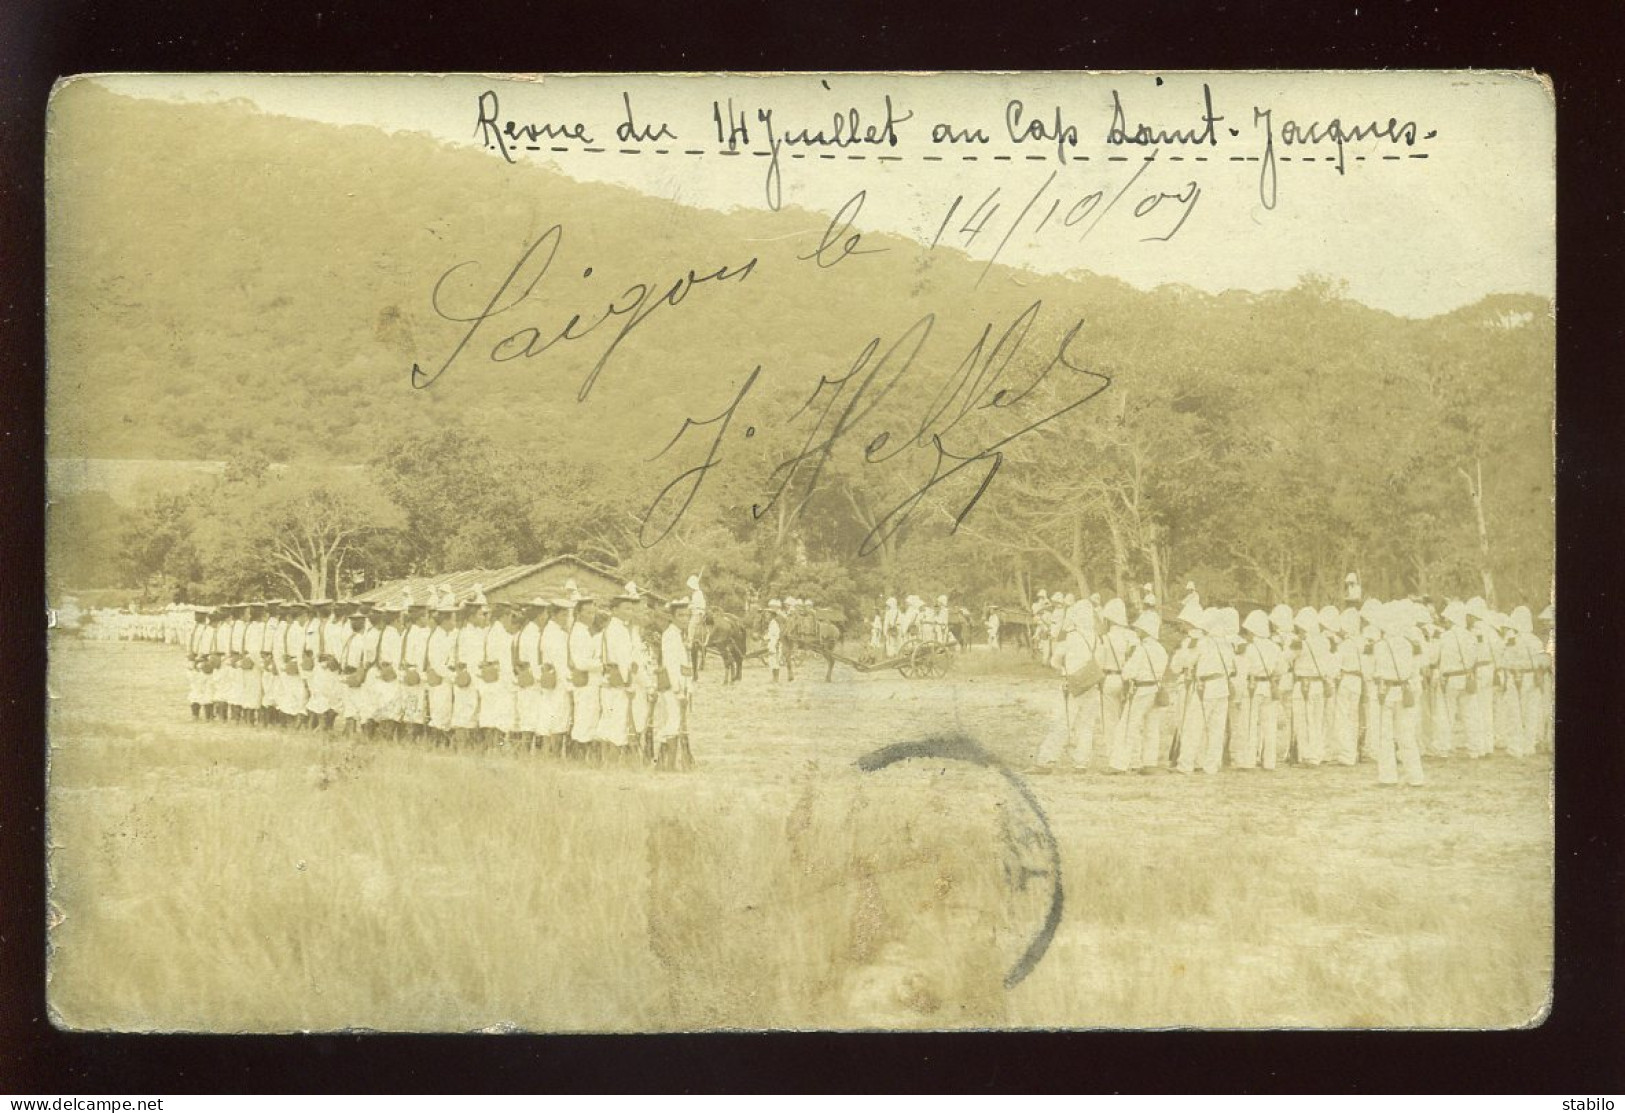 VIET-NAM - SAIGON - REVUE DU 14 JUILLET 1909 AU CAP ST-JACQUES - CARTE PHOTO ORIGINALE - Vietnam